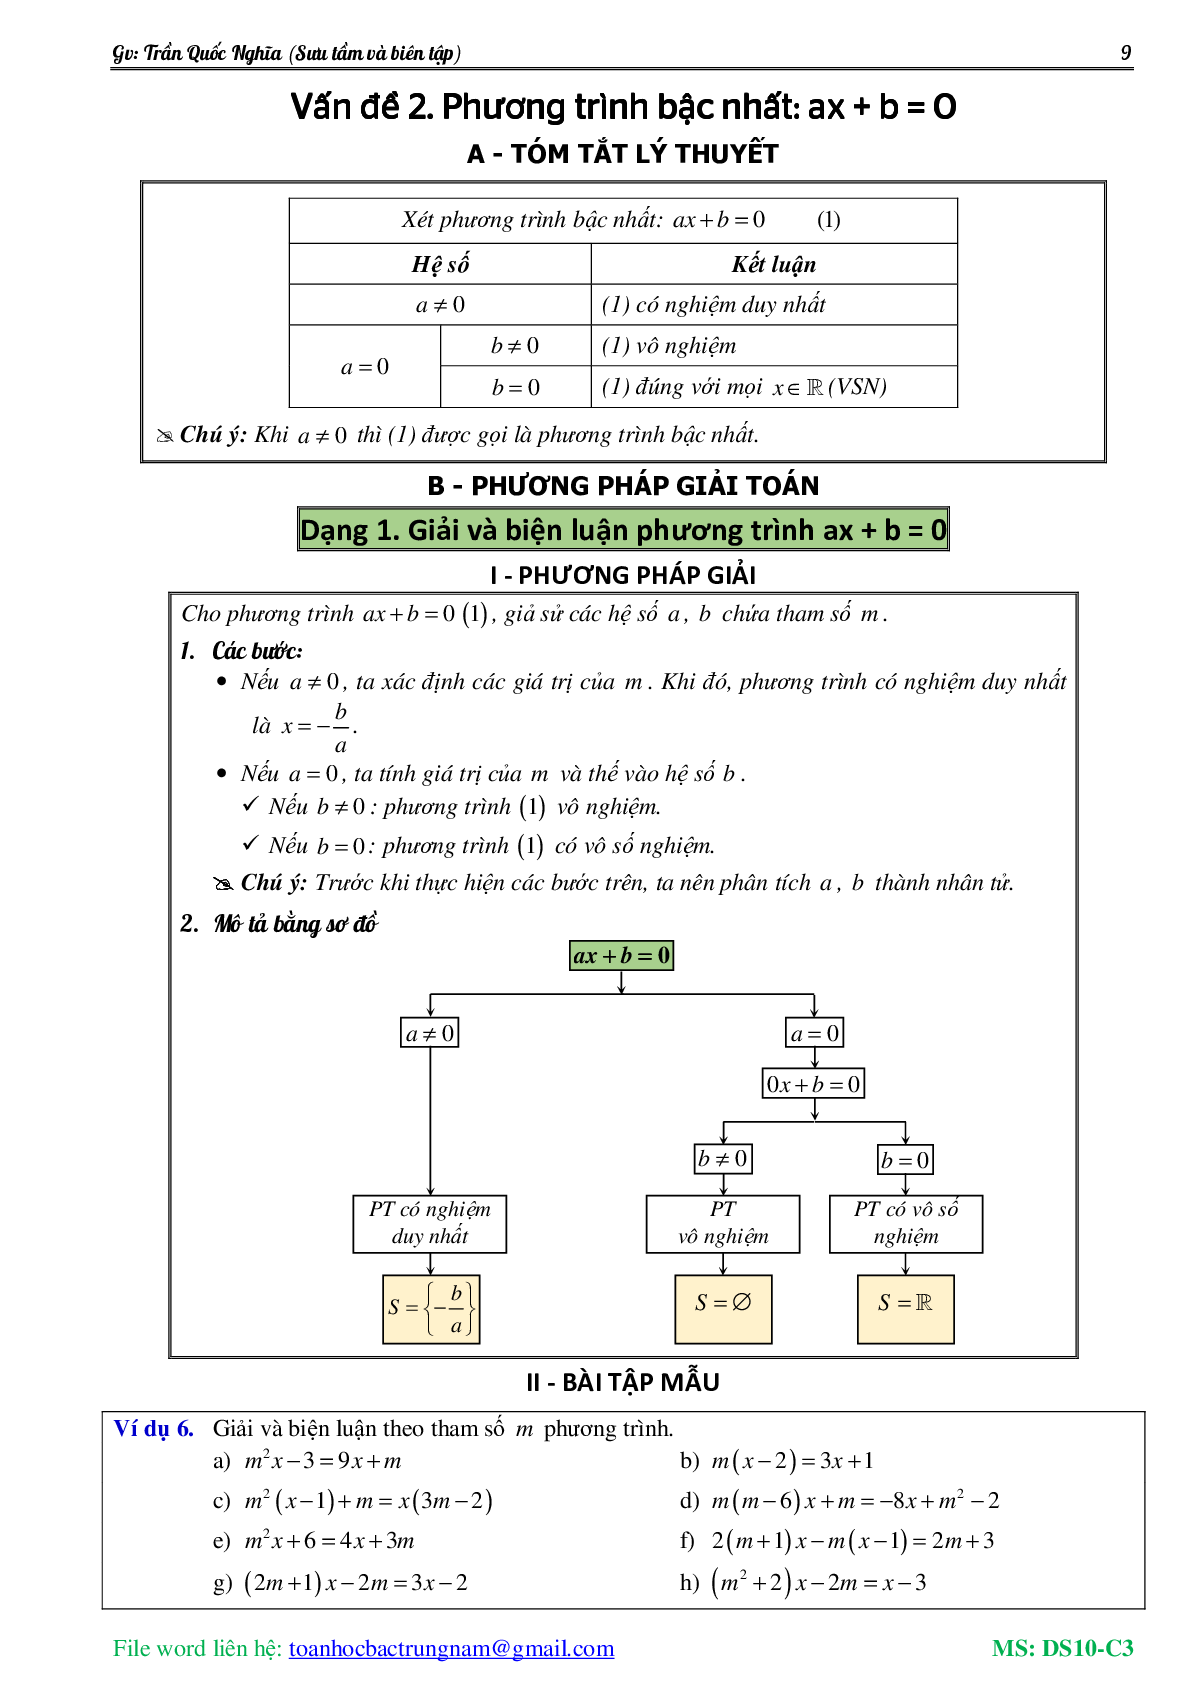 Lý thuyết, bài tập về Phương trình và hệ phương trình có đáp án (trang 10)